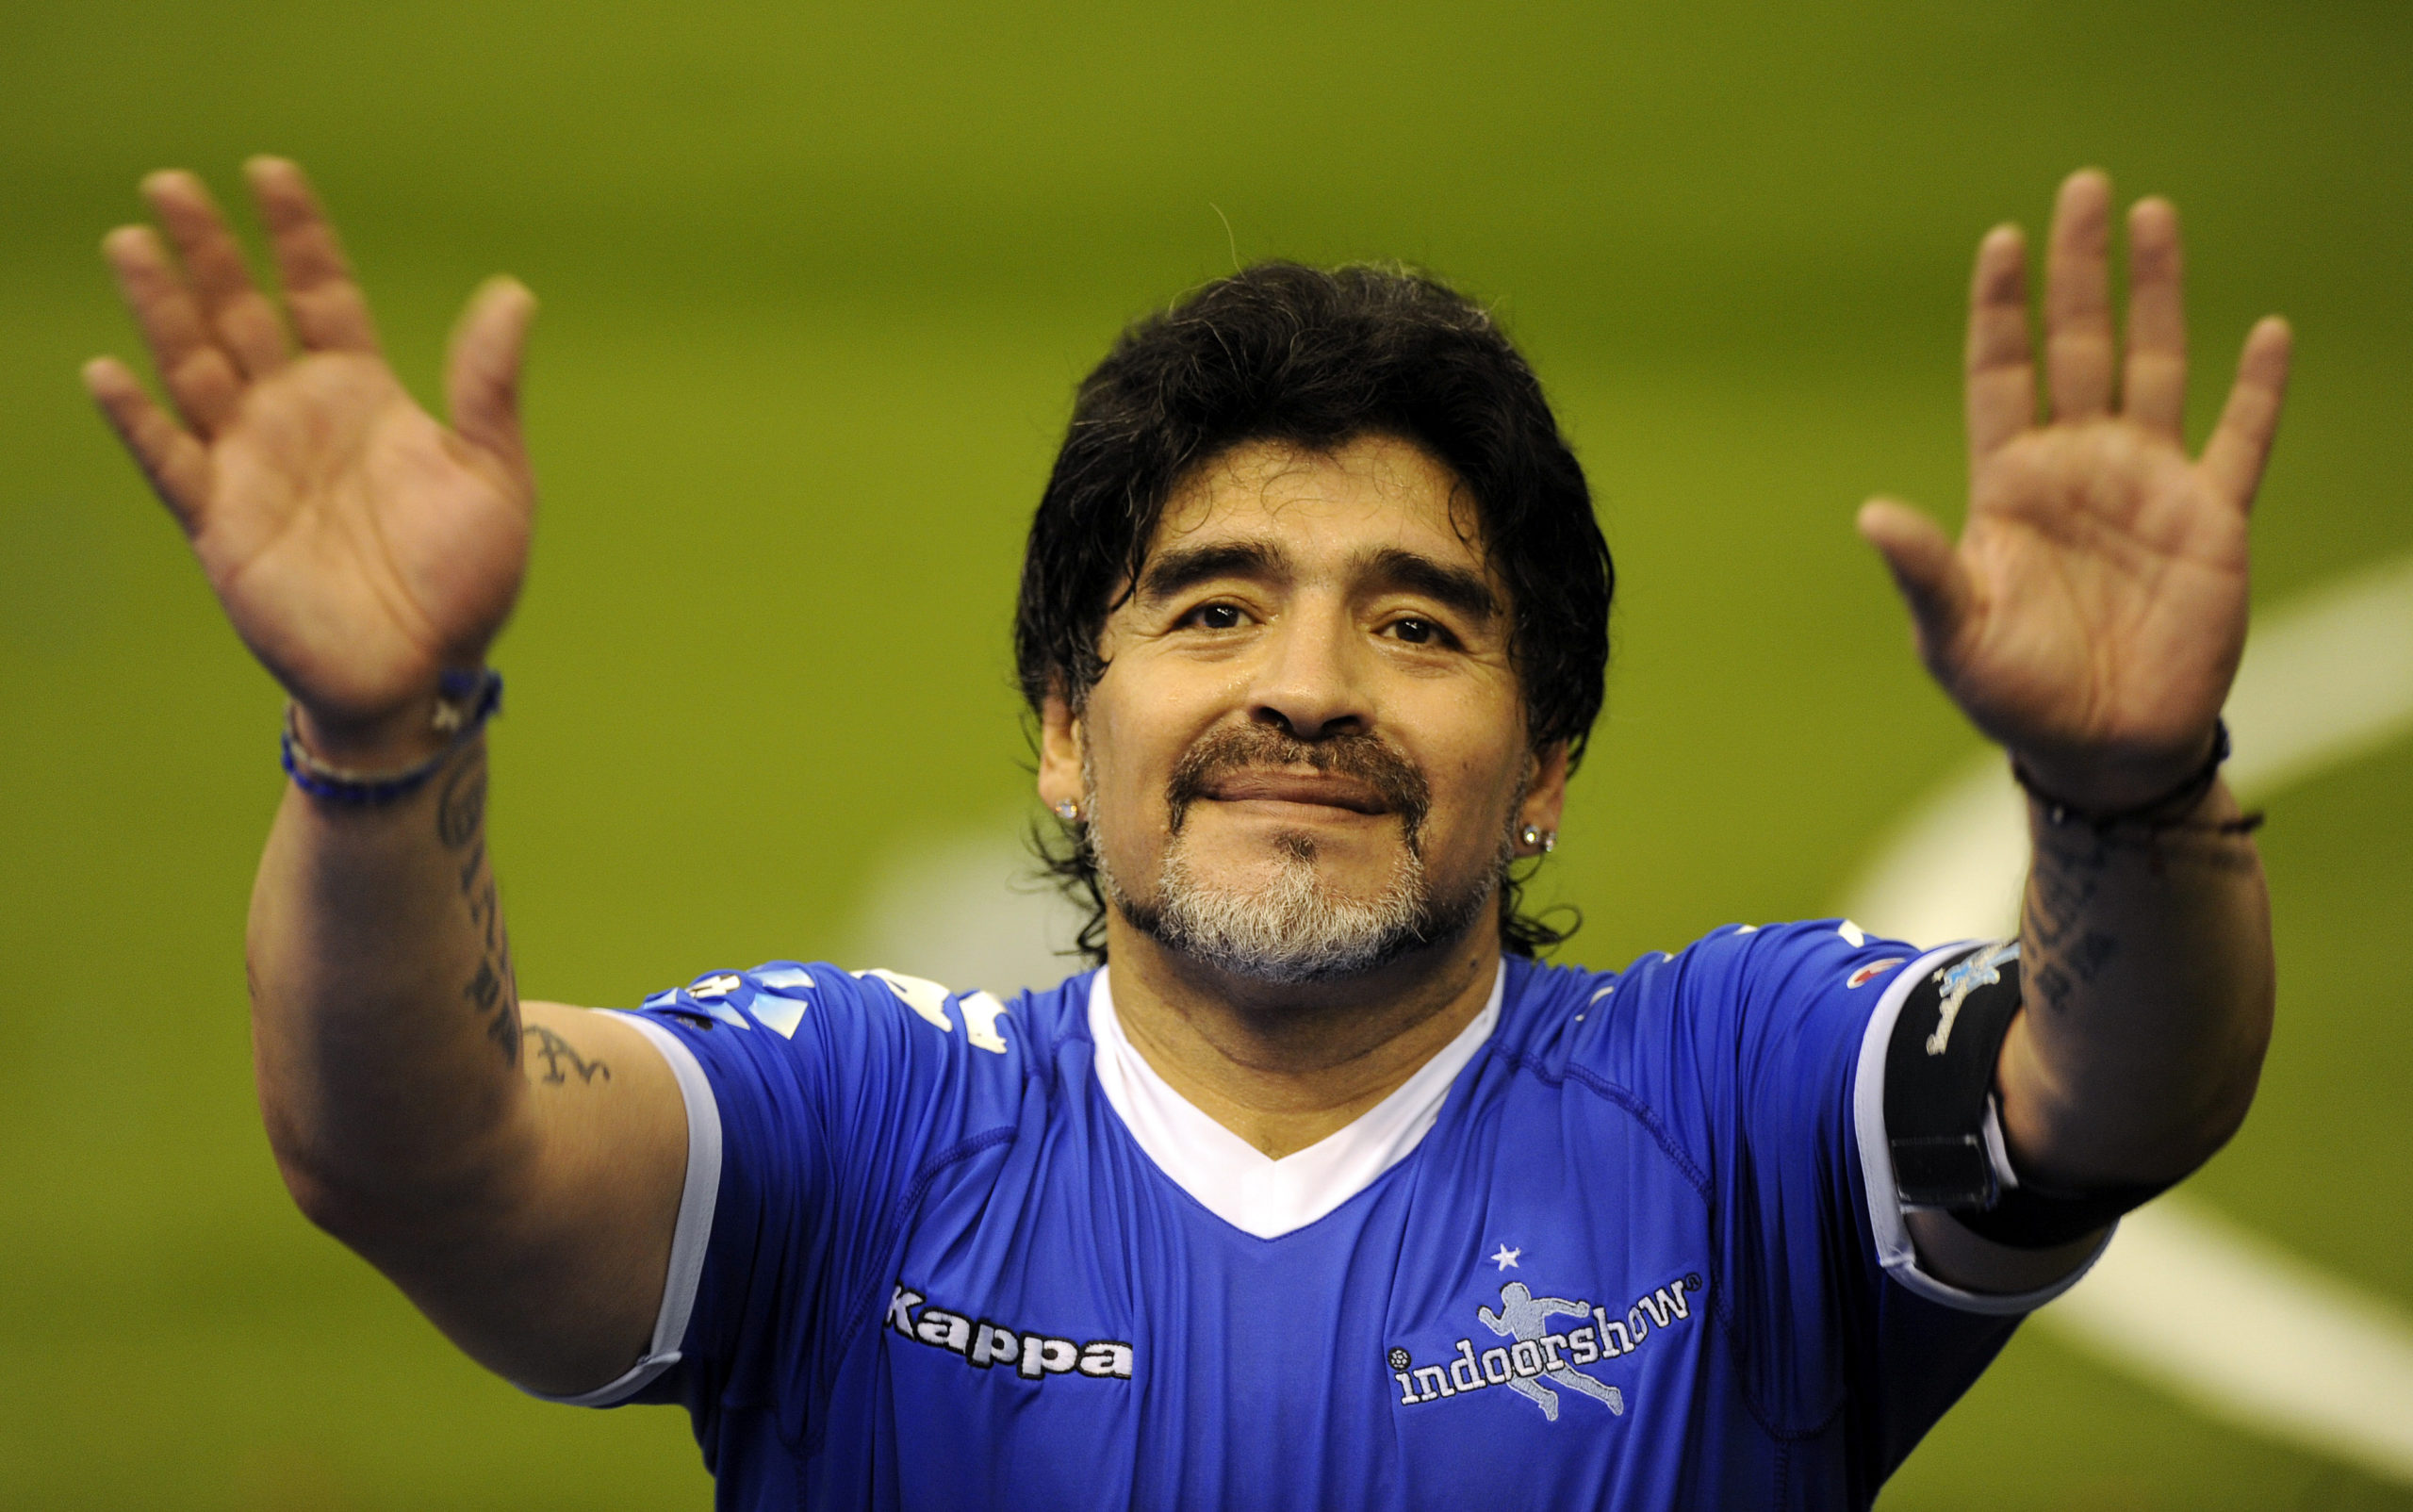 Maradonanın qohumları miras mübarizəsinə başladı - 40 milyon avro uğrunda